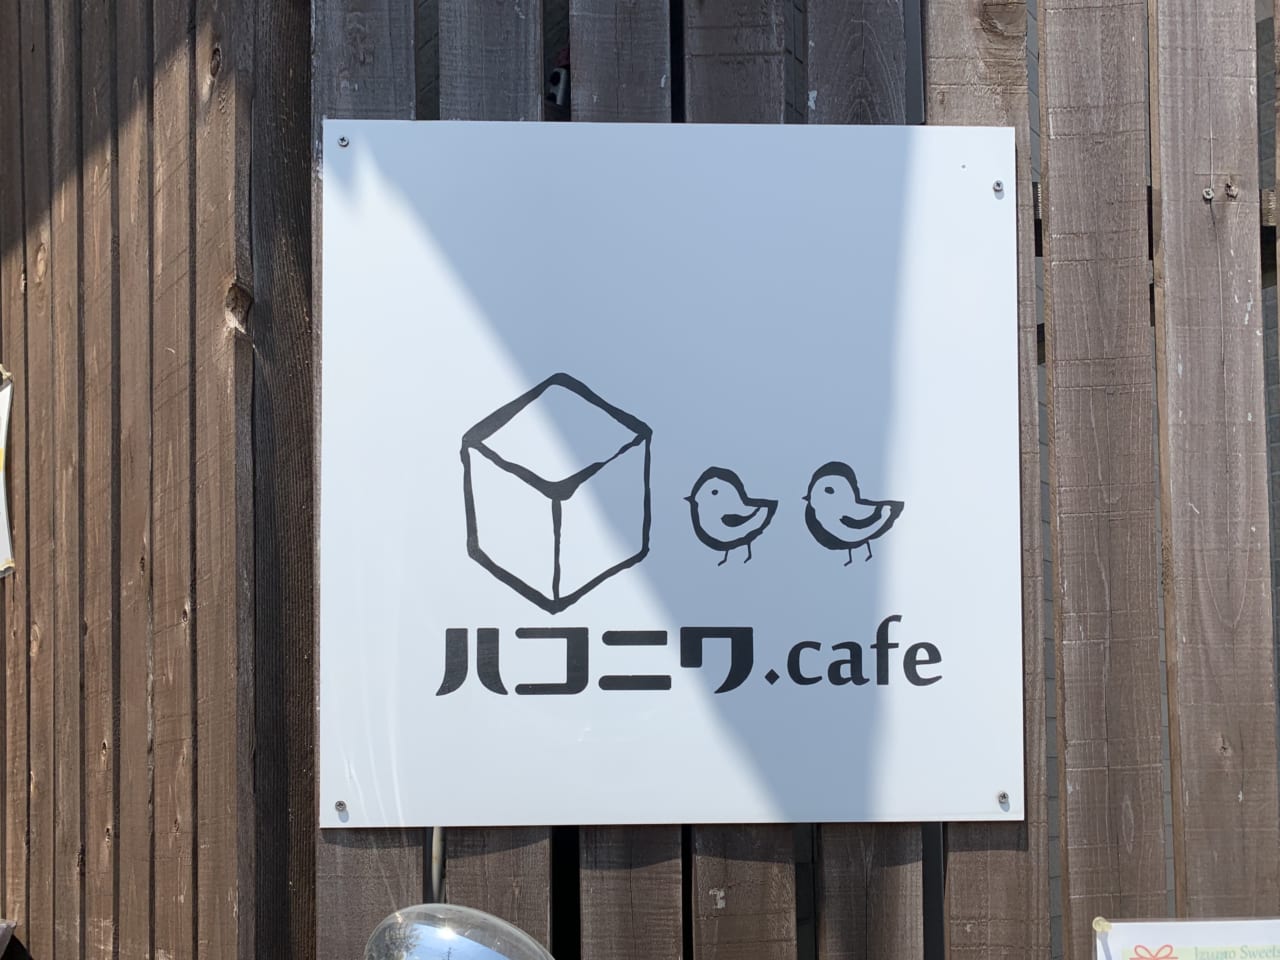 ハコニワ.cafe